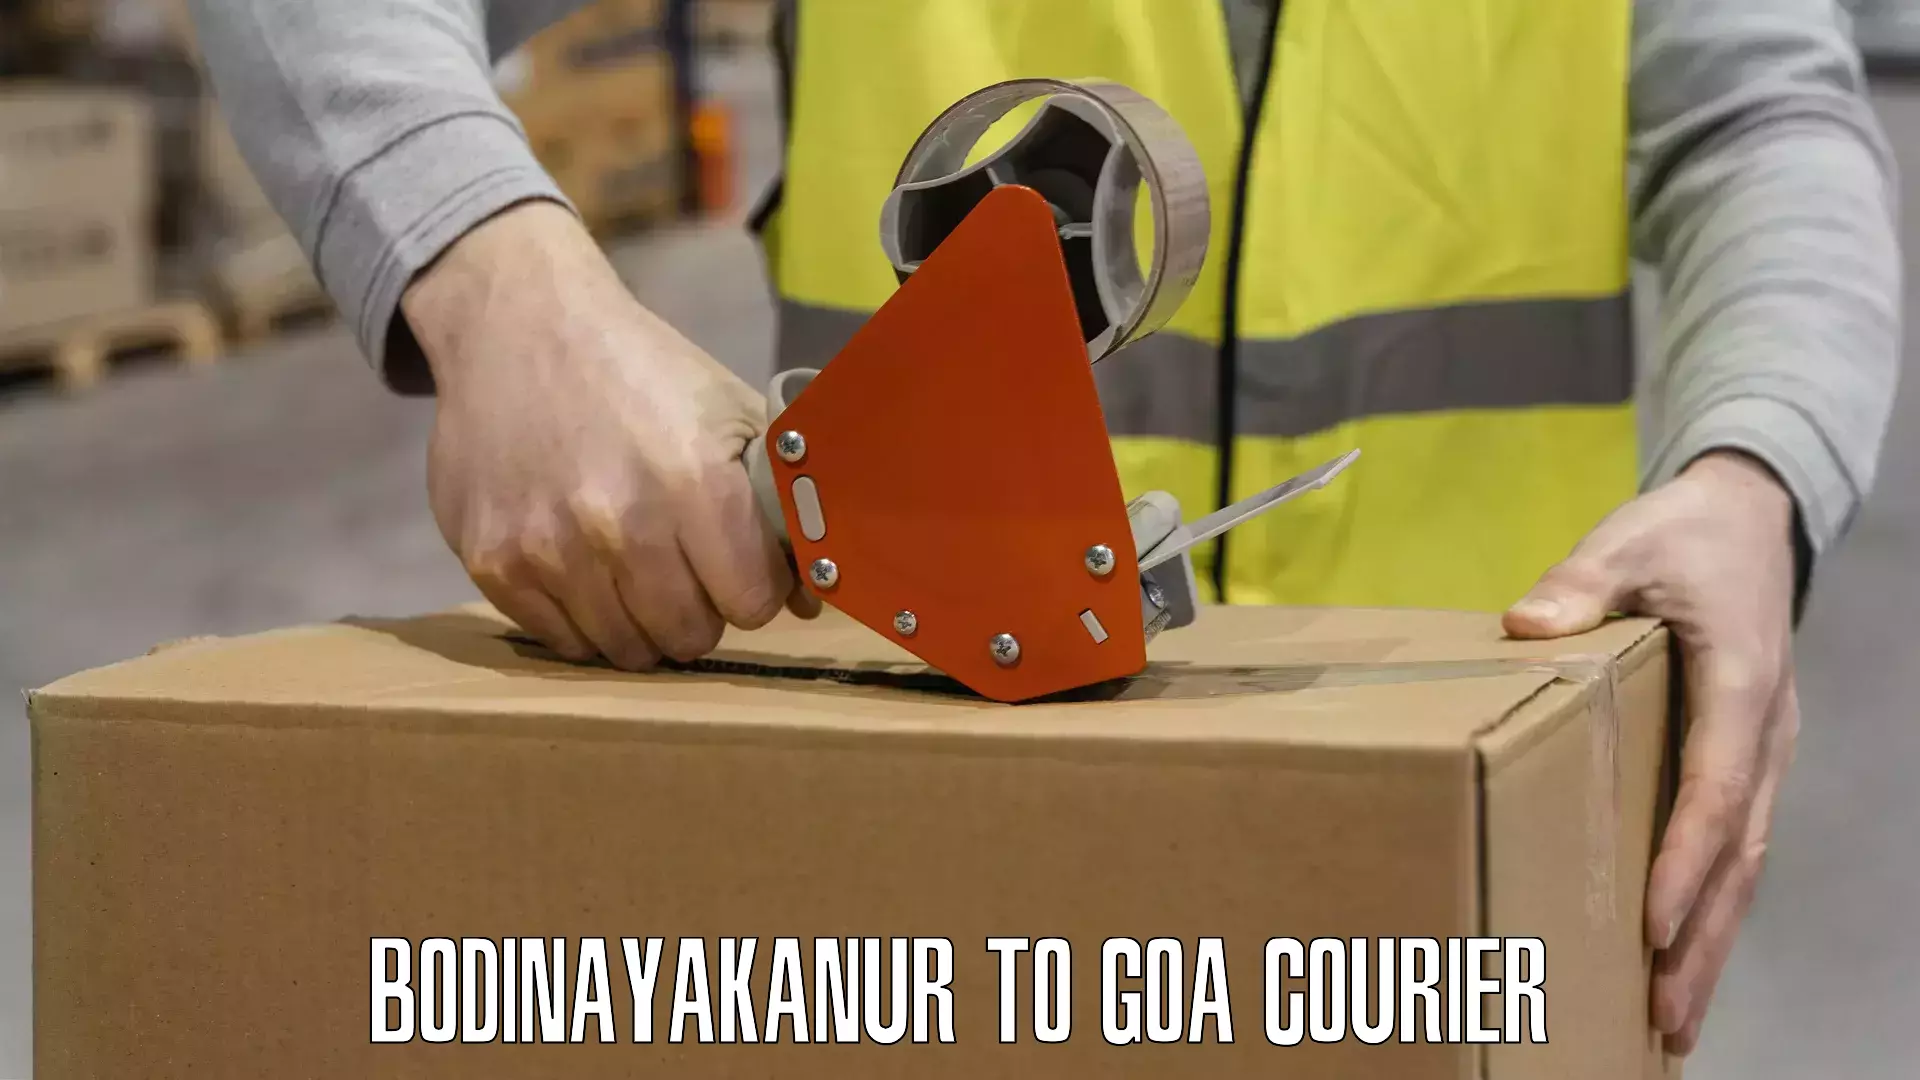 Efficient parcel service Bodinayakanur to Goa